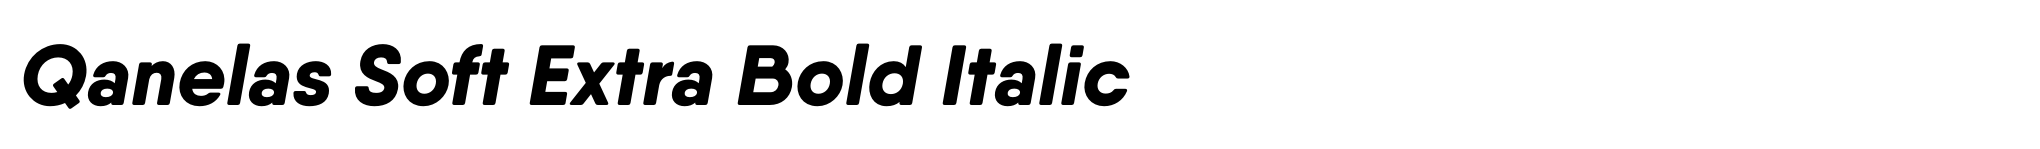 Qanelas Soft Extra Bold Italic image